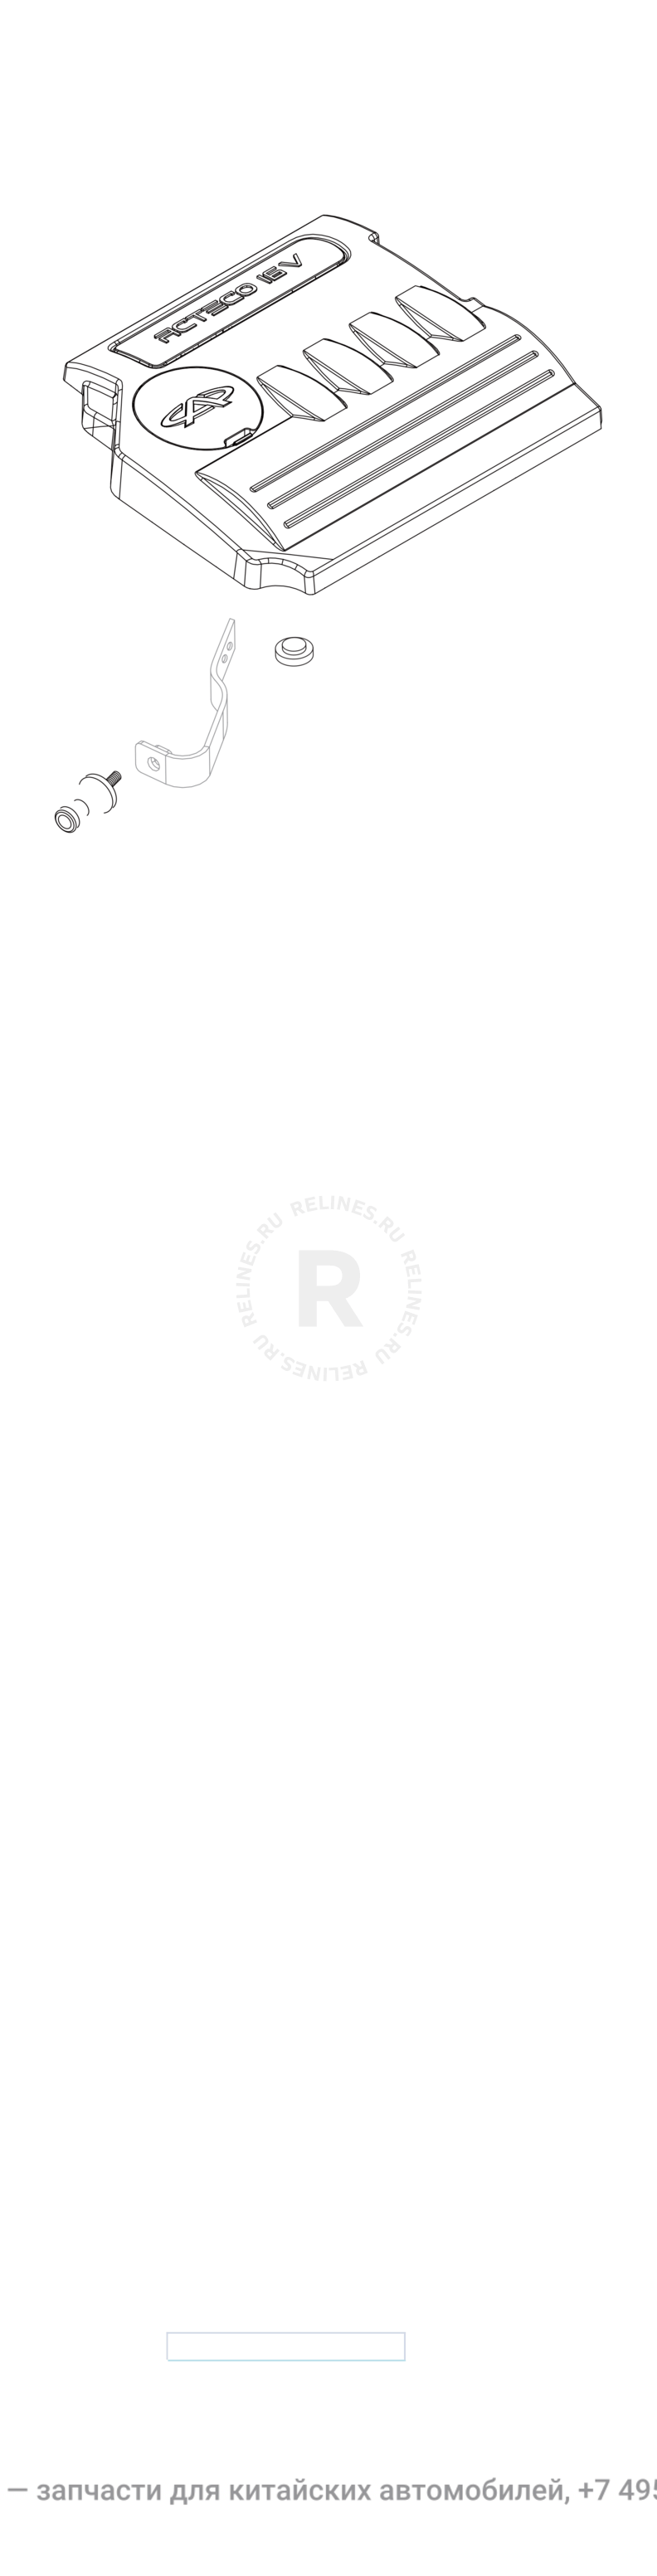 Запчасти Chery Tiggo 3 Поколение I (2014)  — Плита верхняя (декоративная крышка) двигателя (1) — схема